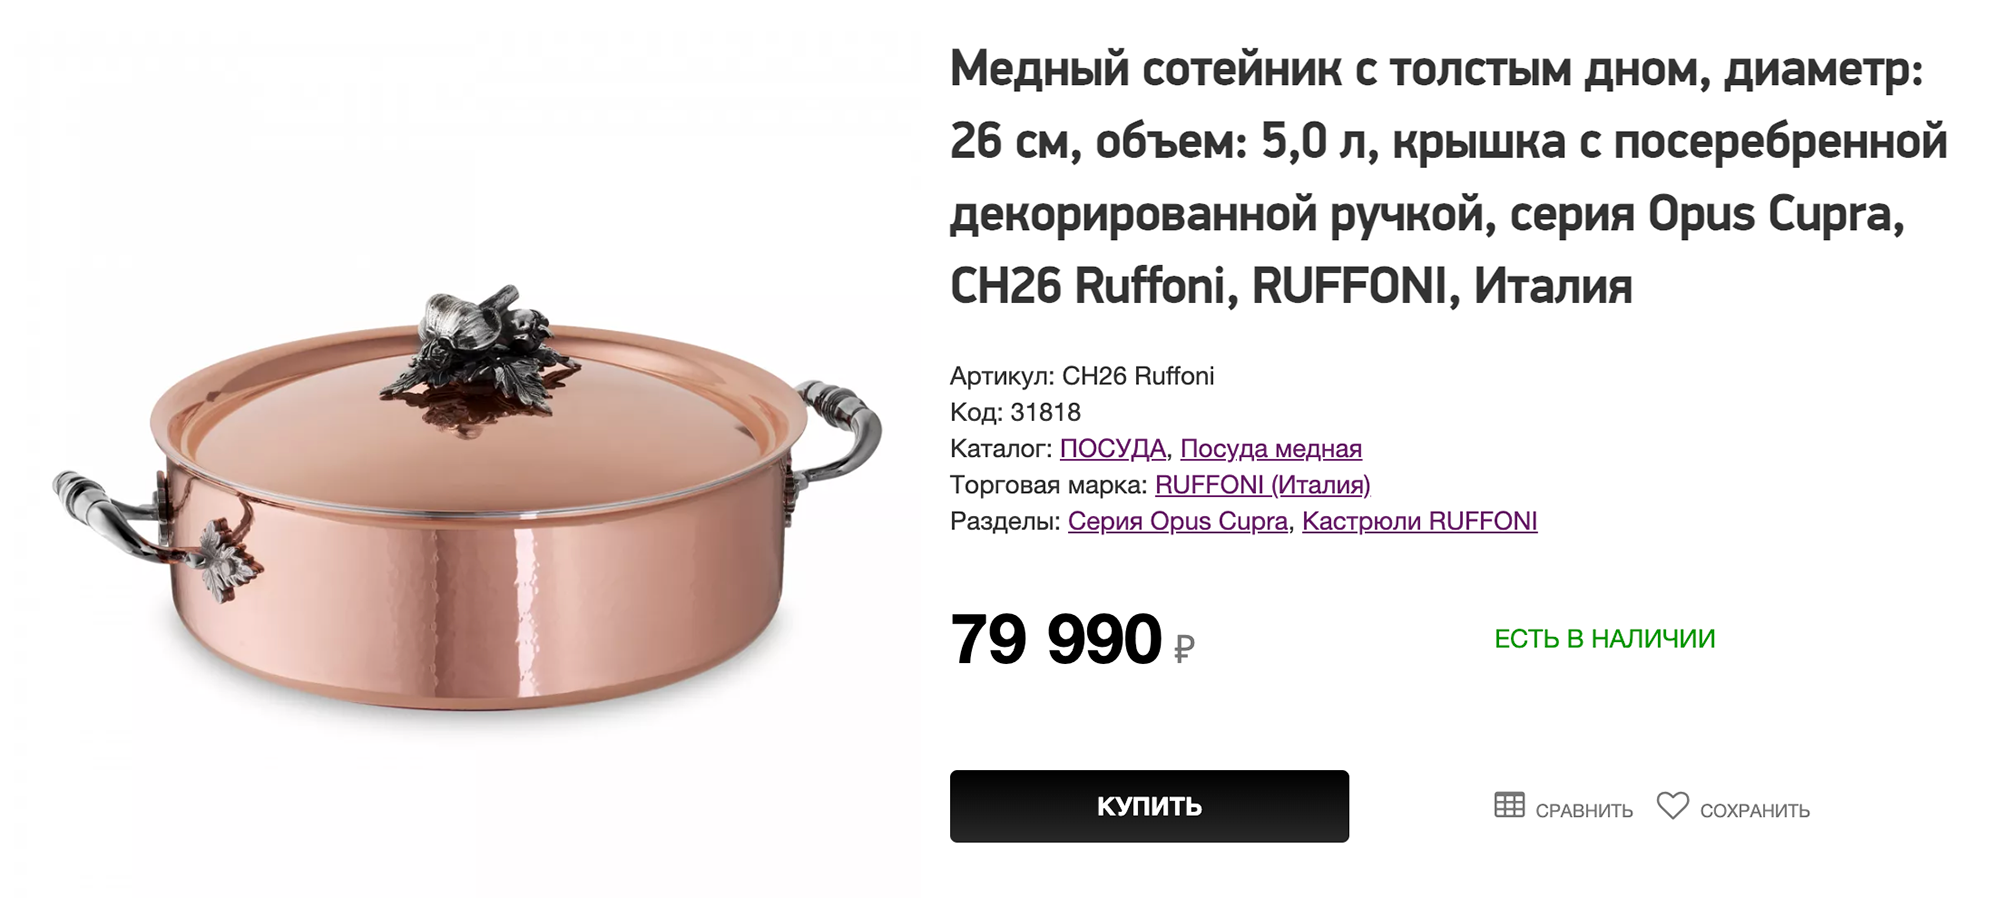 А это медный сотейник с покрытием из нержавеющей стали. Это, пожалуй, самая дорогая посуда, которую я встречала: пятилитровый сотейник стоит 79 990 ₽. Источник: vazaro.ru